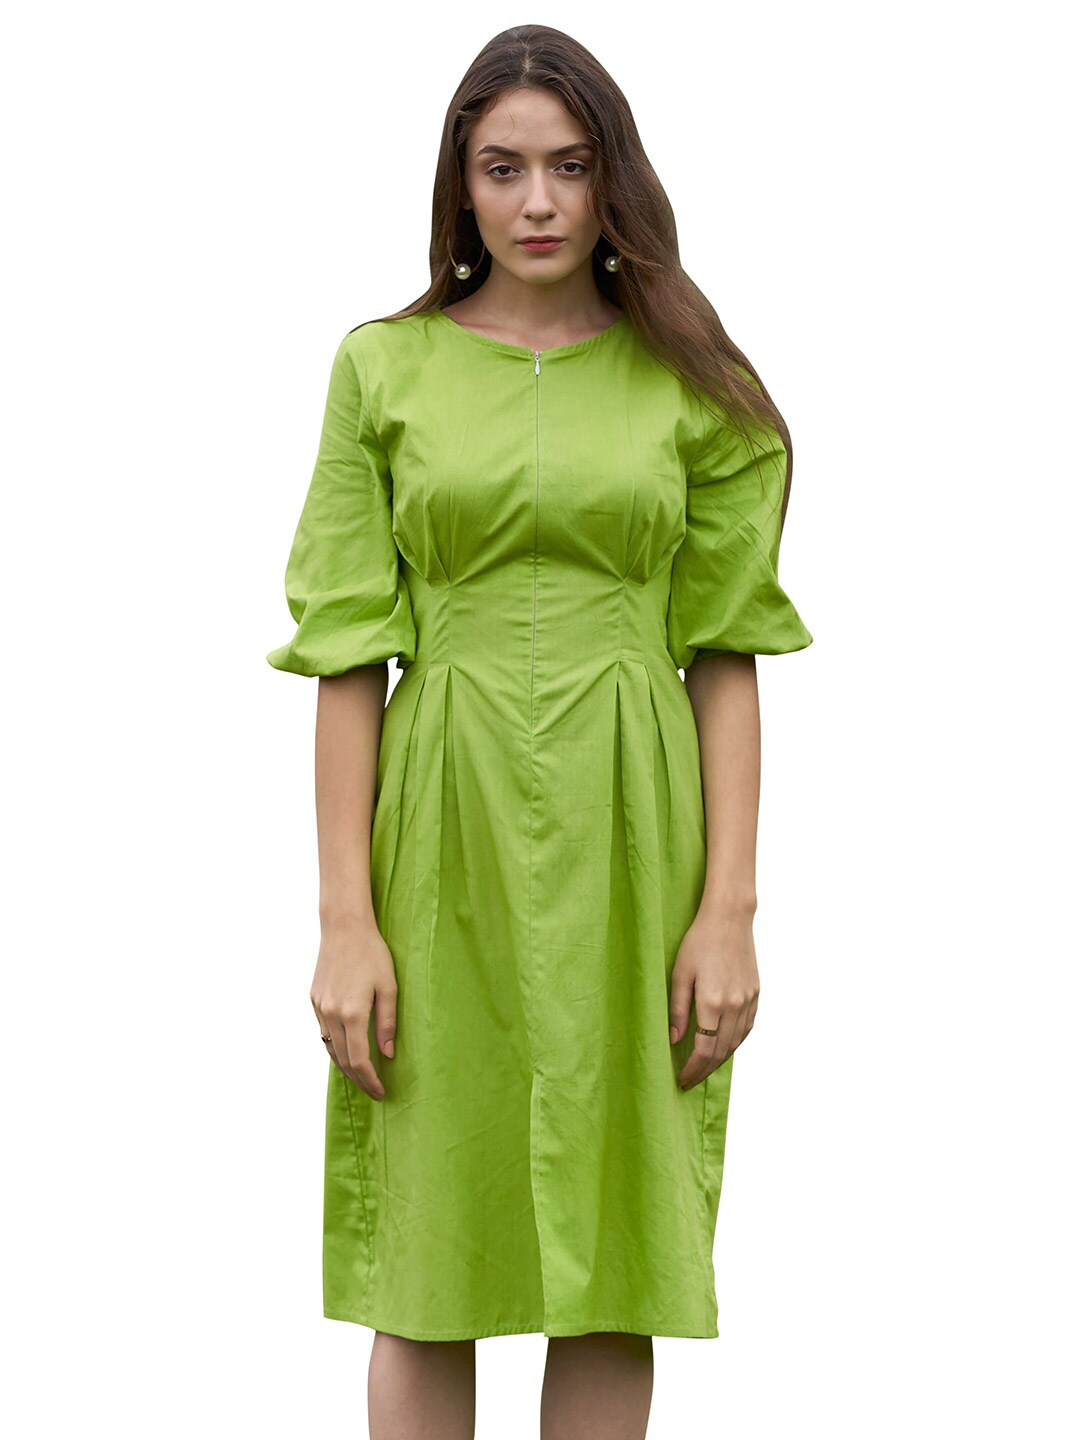 NEOFAA Green Dress Price in India